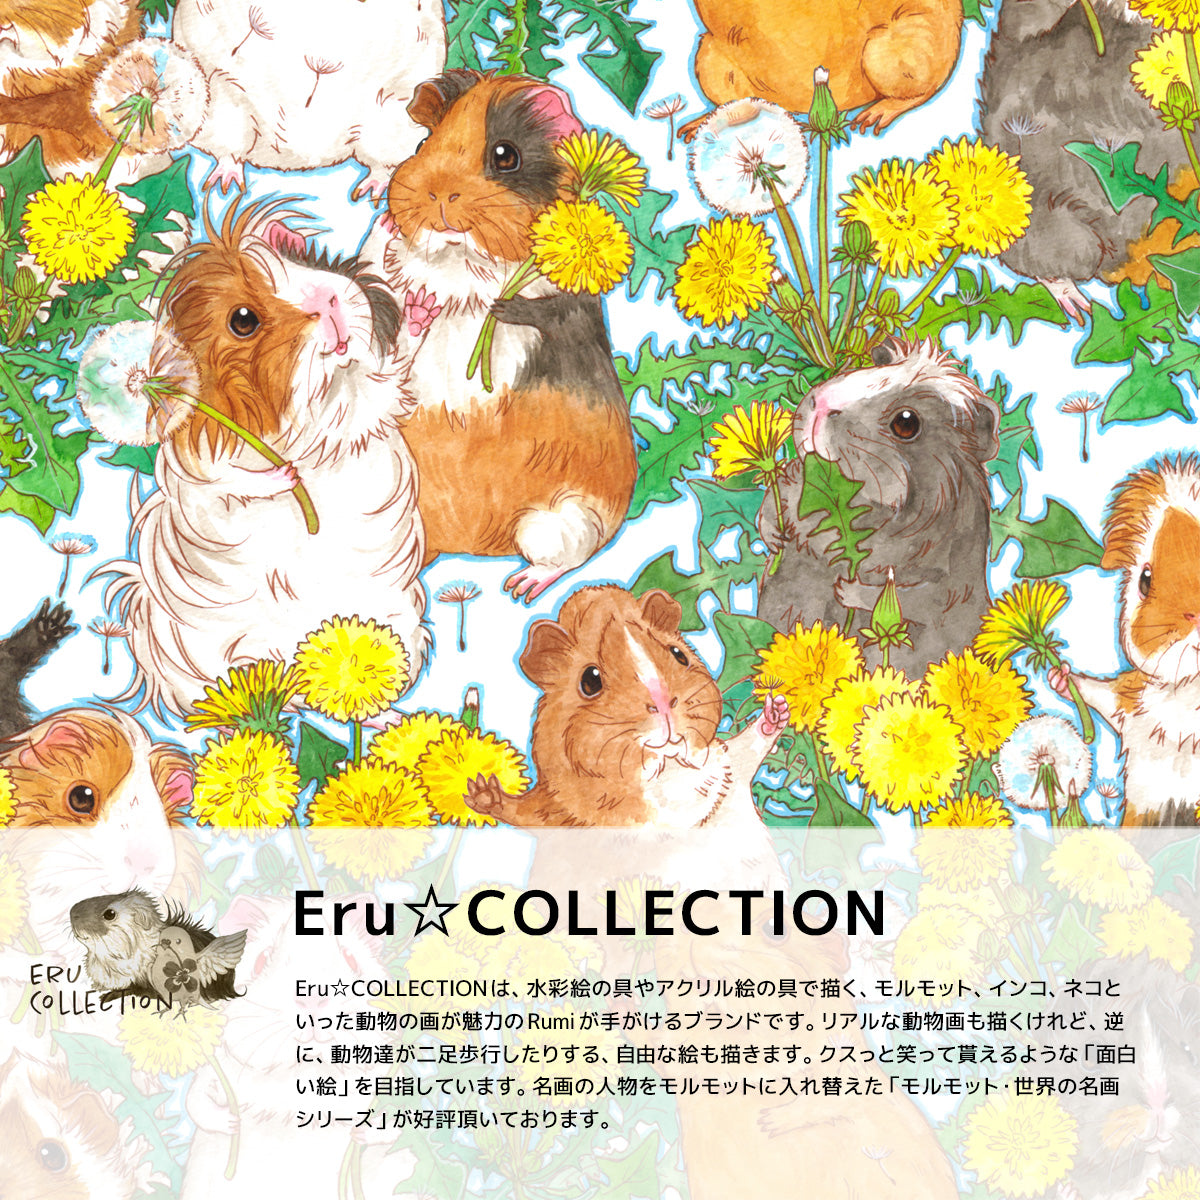 Rumiデザイン、ERu☆COLLECTIONブランドのカードケース